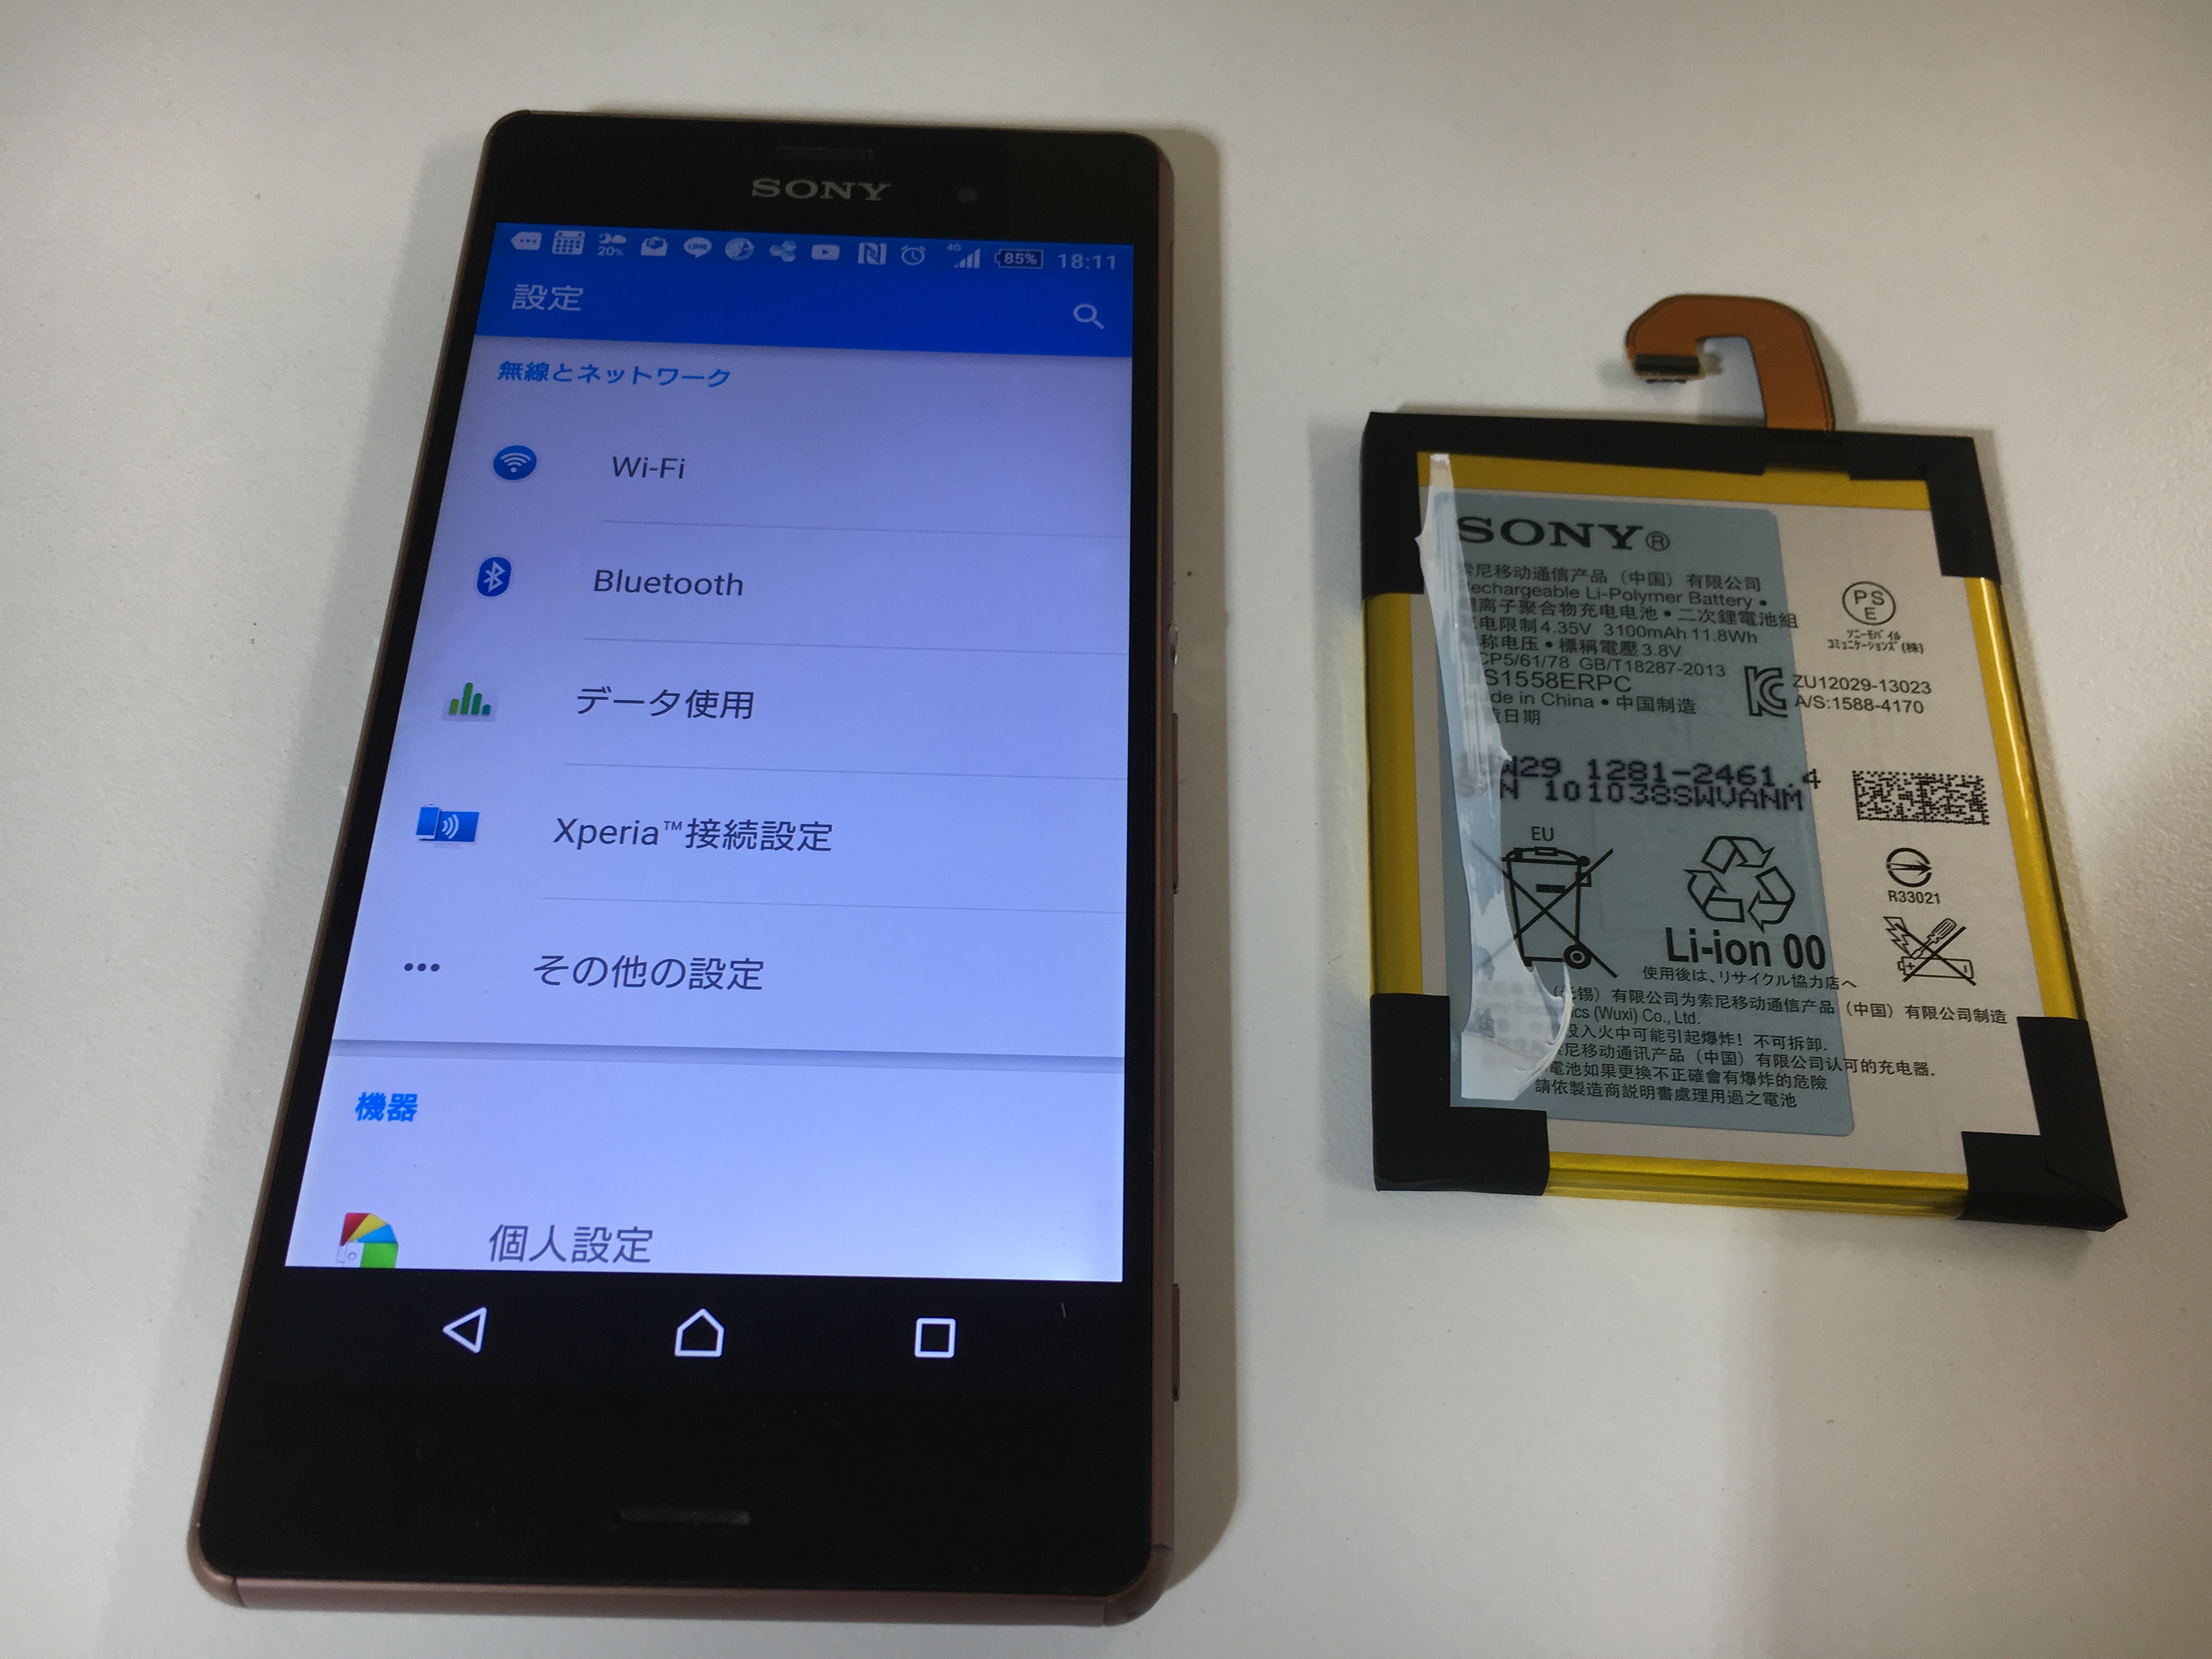 エクスペリアスマホのバッテリー交換ならアンドロイドホスピタル町田へ 即日 データそのままお返し Xperia Galaxy Zenfone Huawei Nexus修理のアンドロイドホスピタル